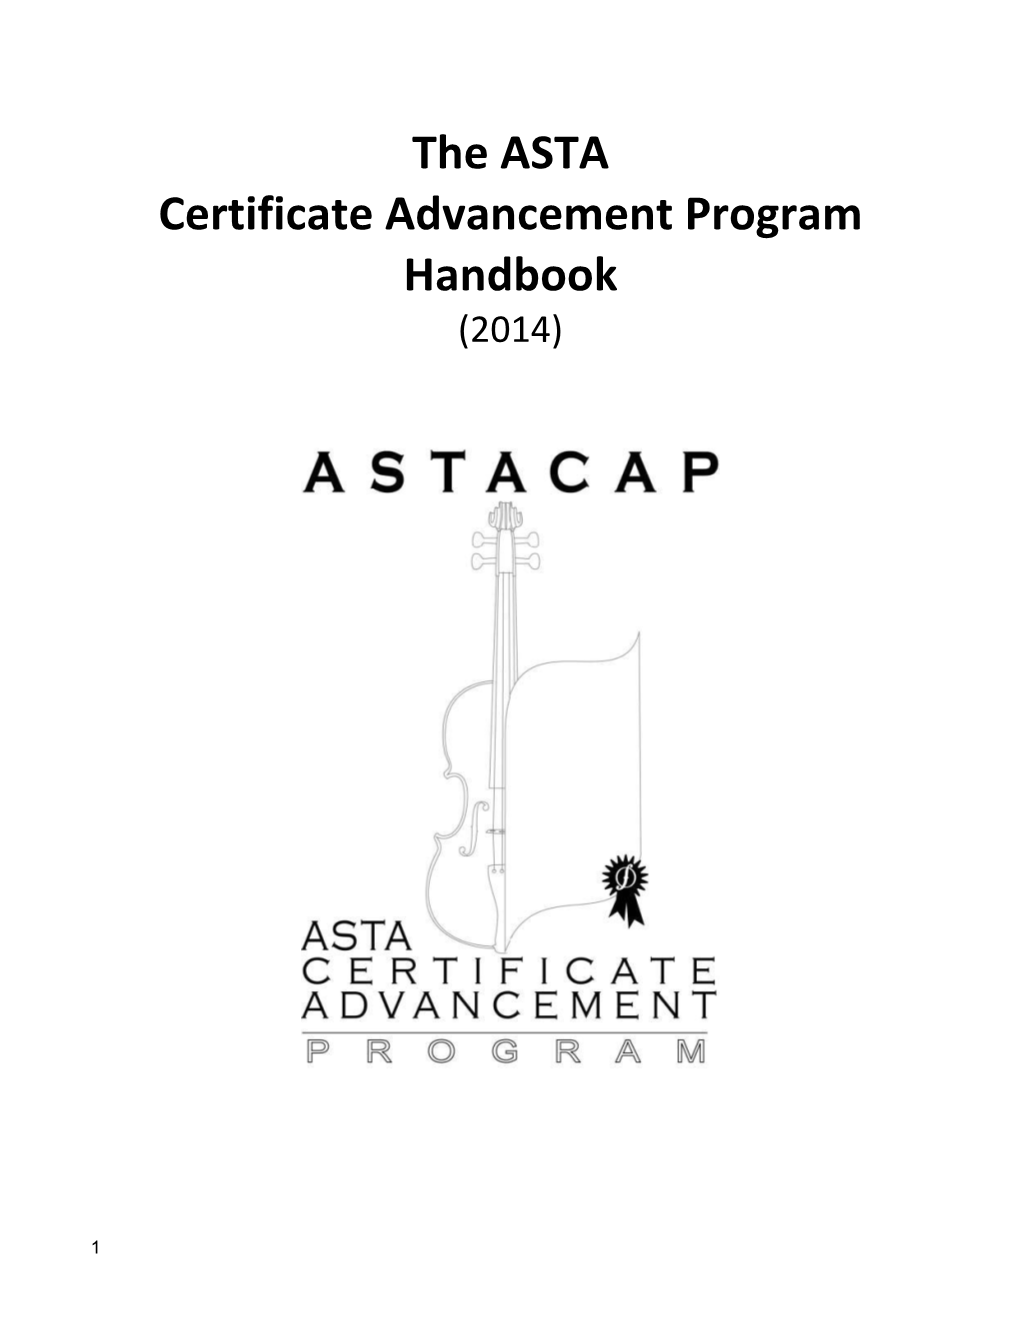 The ASTA Certificate Advancement Program Handbook